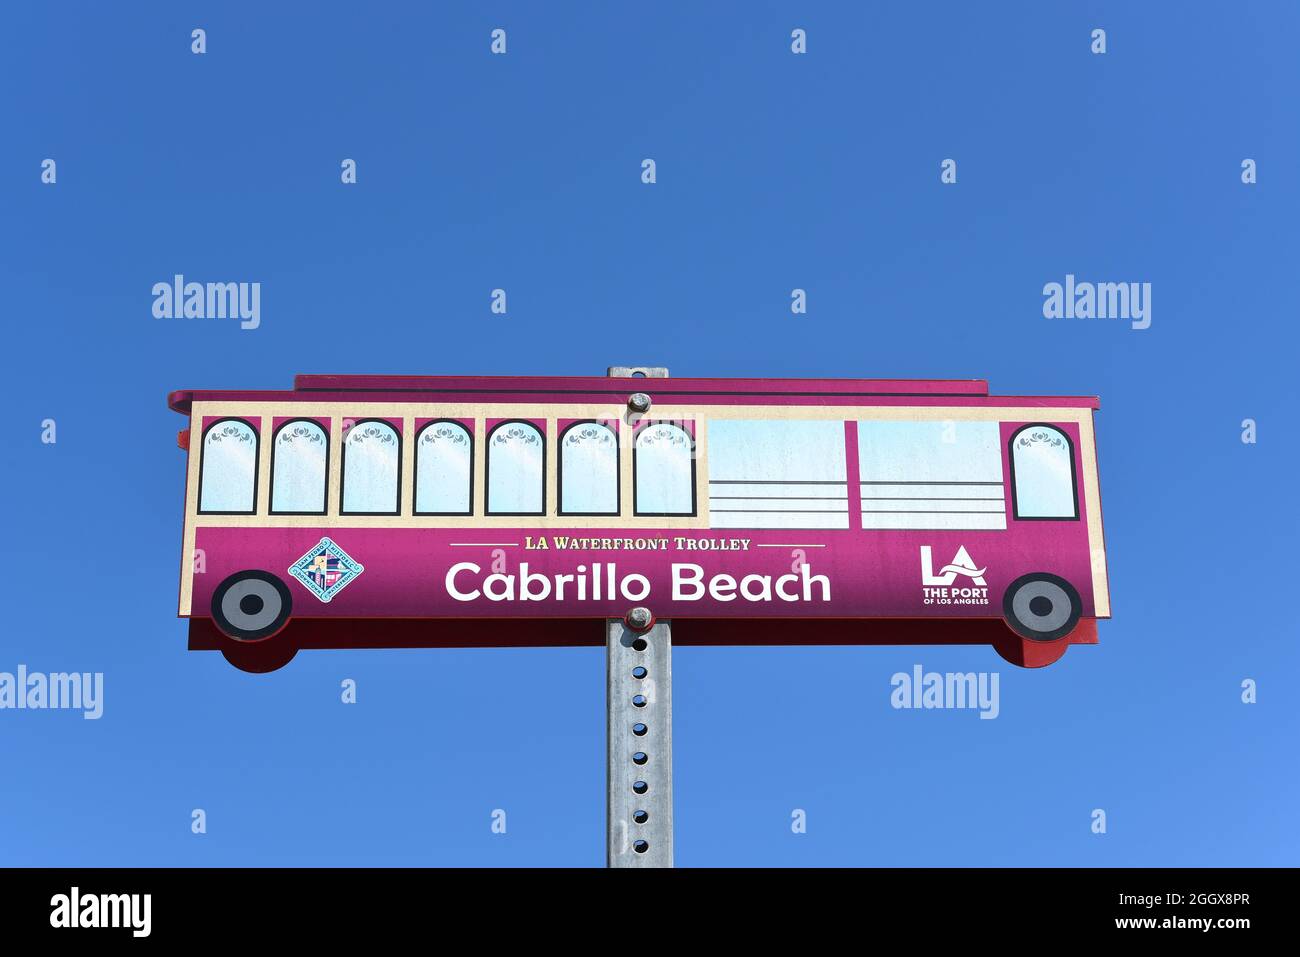 SAN PEDRO, KALIFORNIEN - 27. AUGUST 2021: Schild für den LA Waterfront Trolley am Cabrillo Beach. Stockfoto